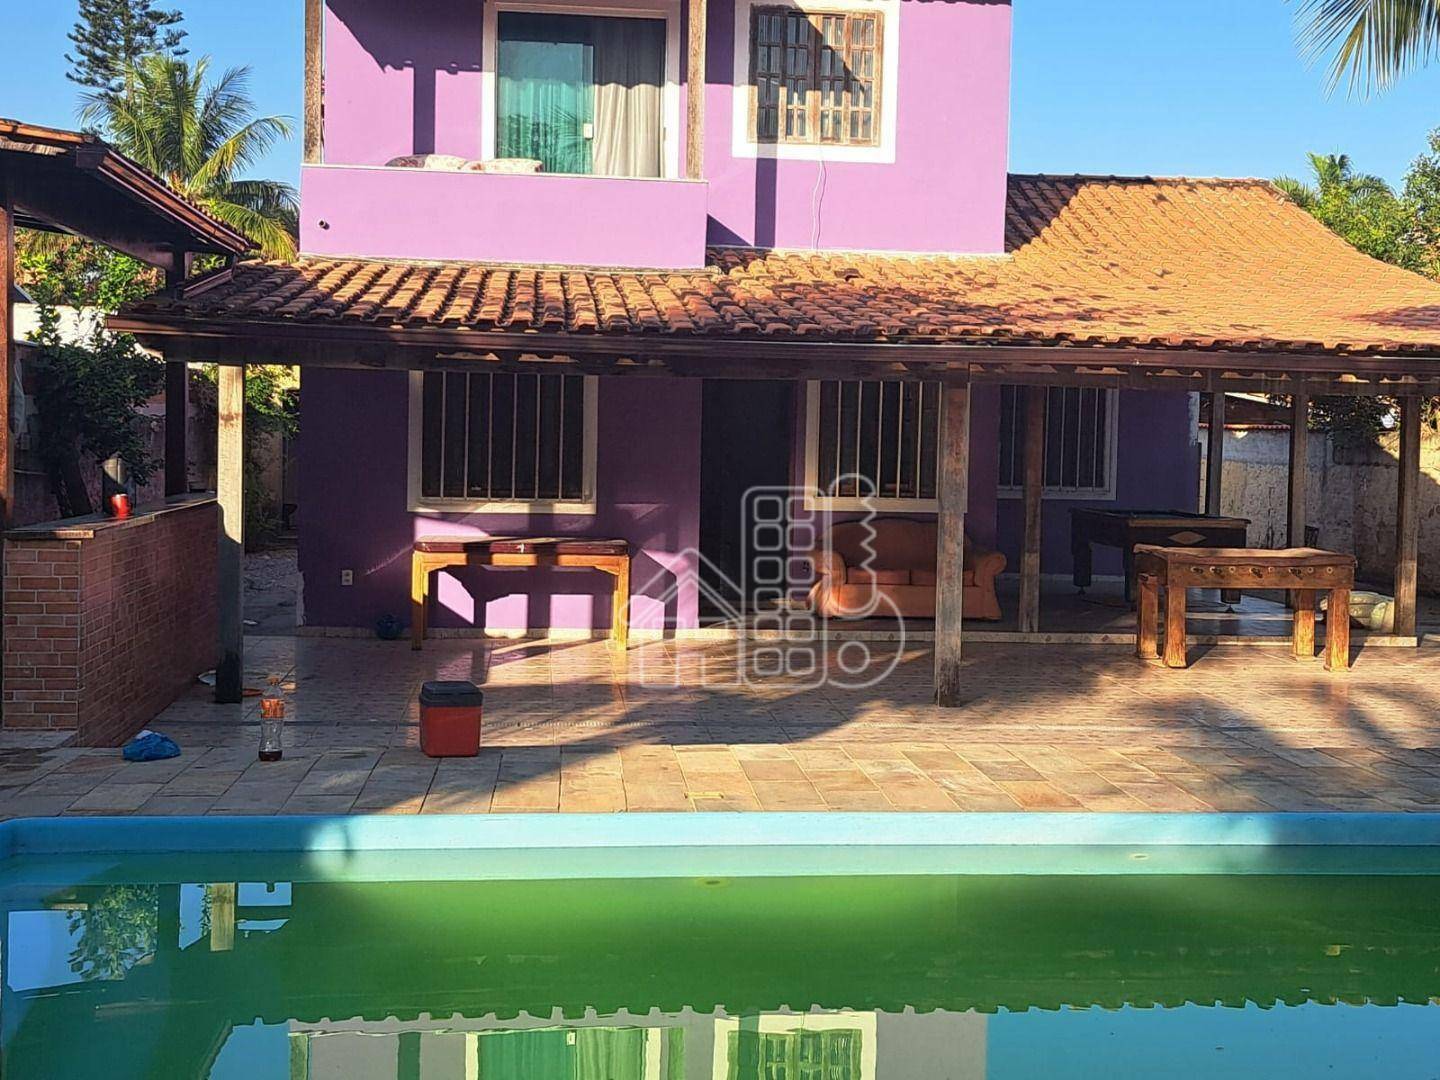 Casa com 5 quartos à venda, 120 m² por R$ 650.000 - Jardim Atlântico Oeste (Itaipuaçu) - Maricá/RJ